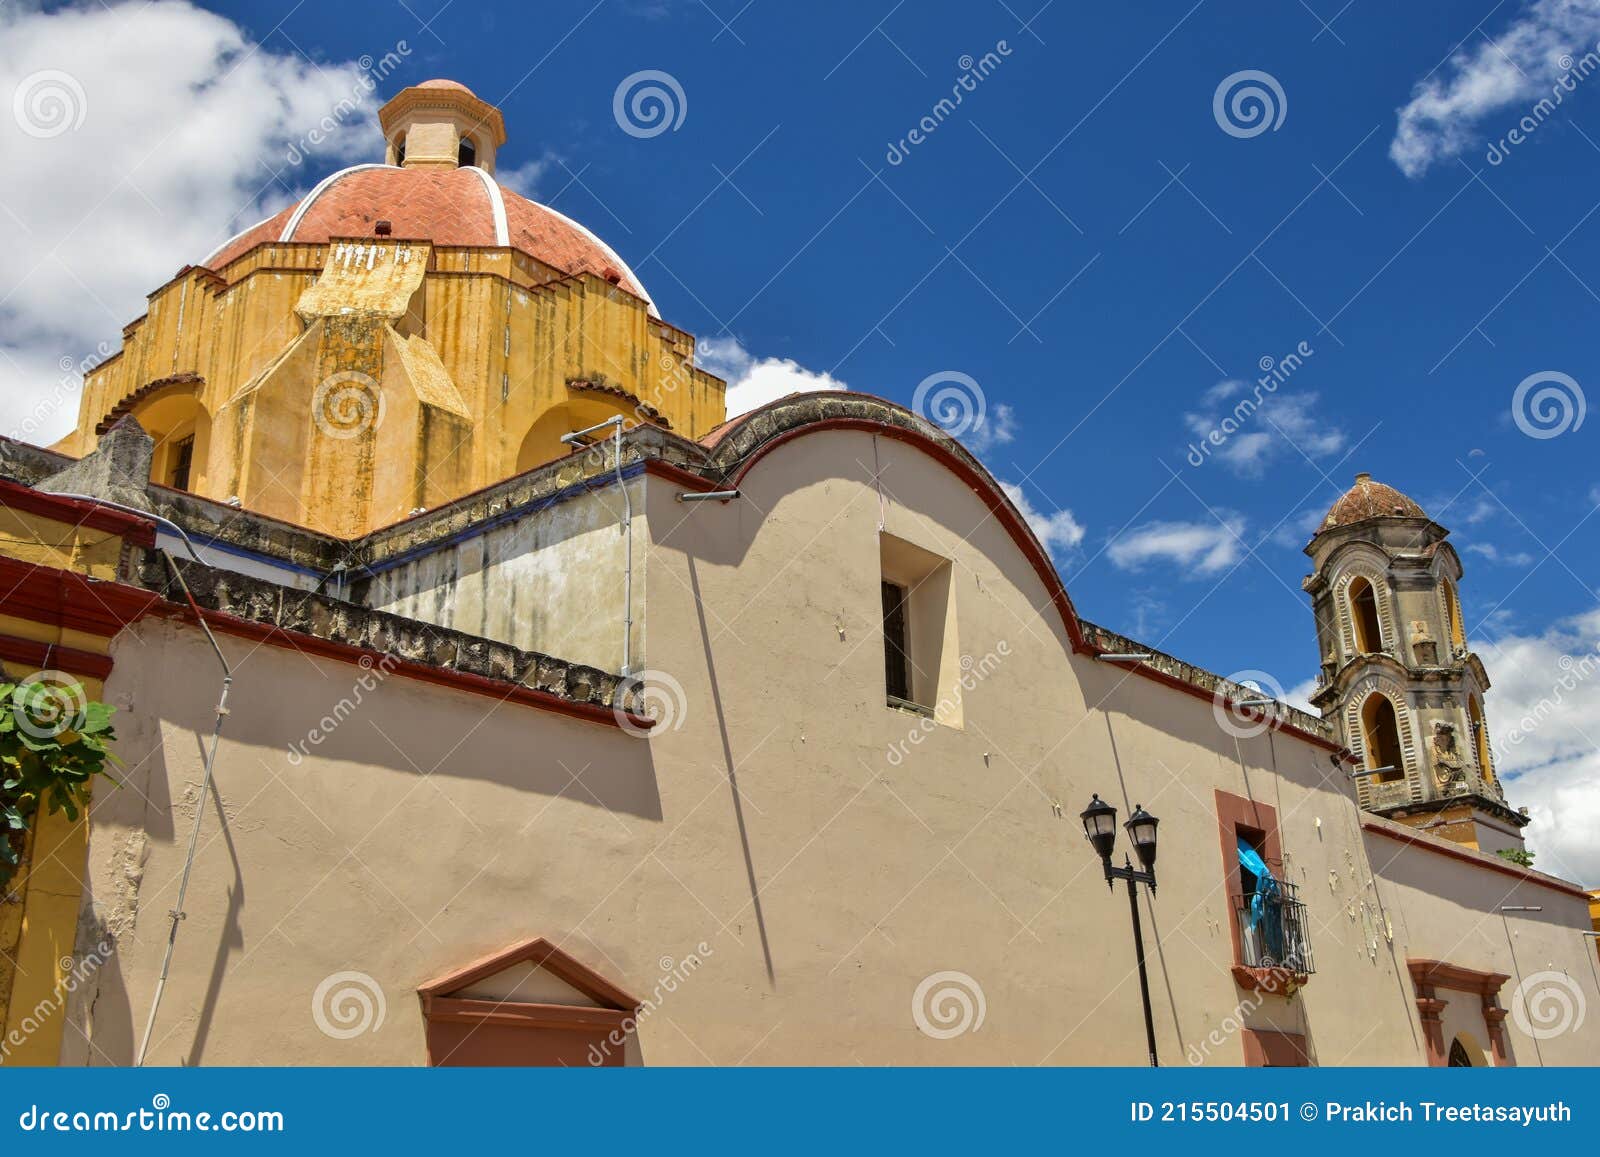 oaxaca de juÃÂ¡rez is the capital and largest city of the eponymous state in mexico